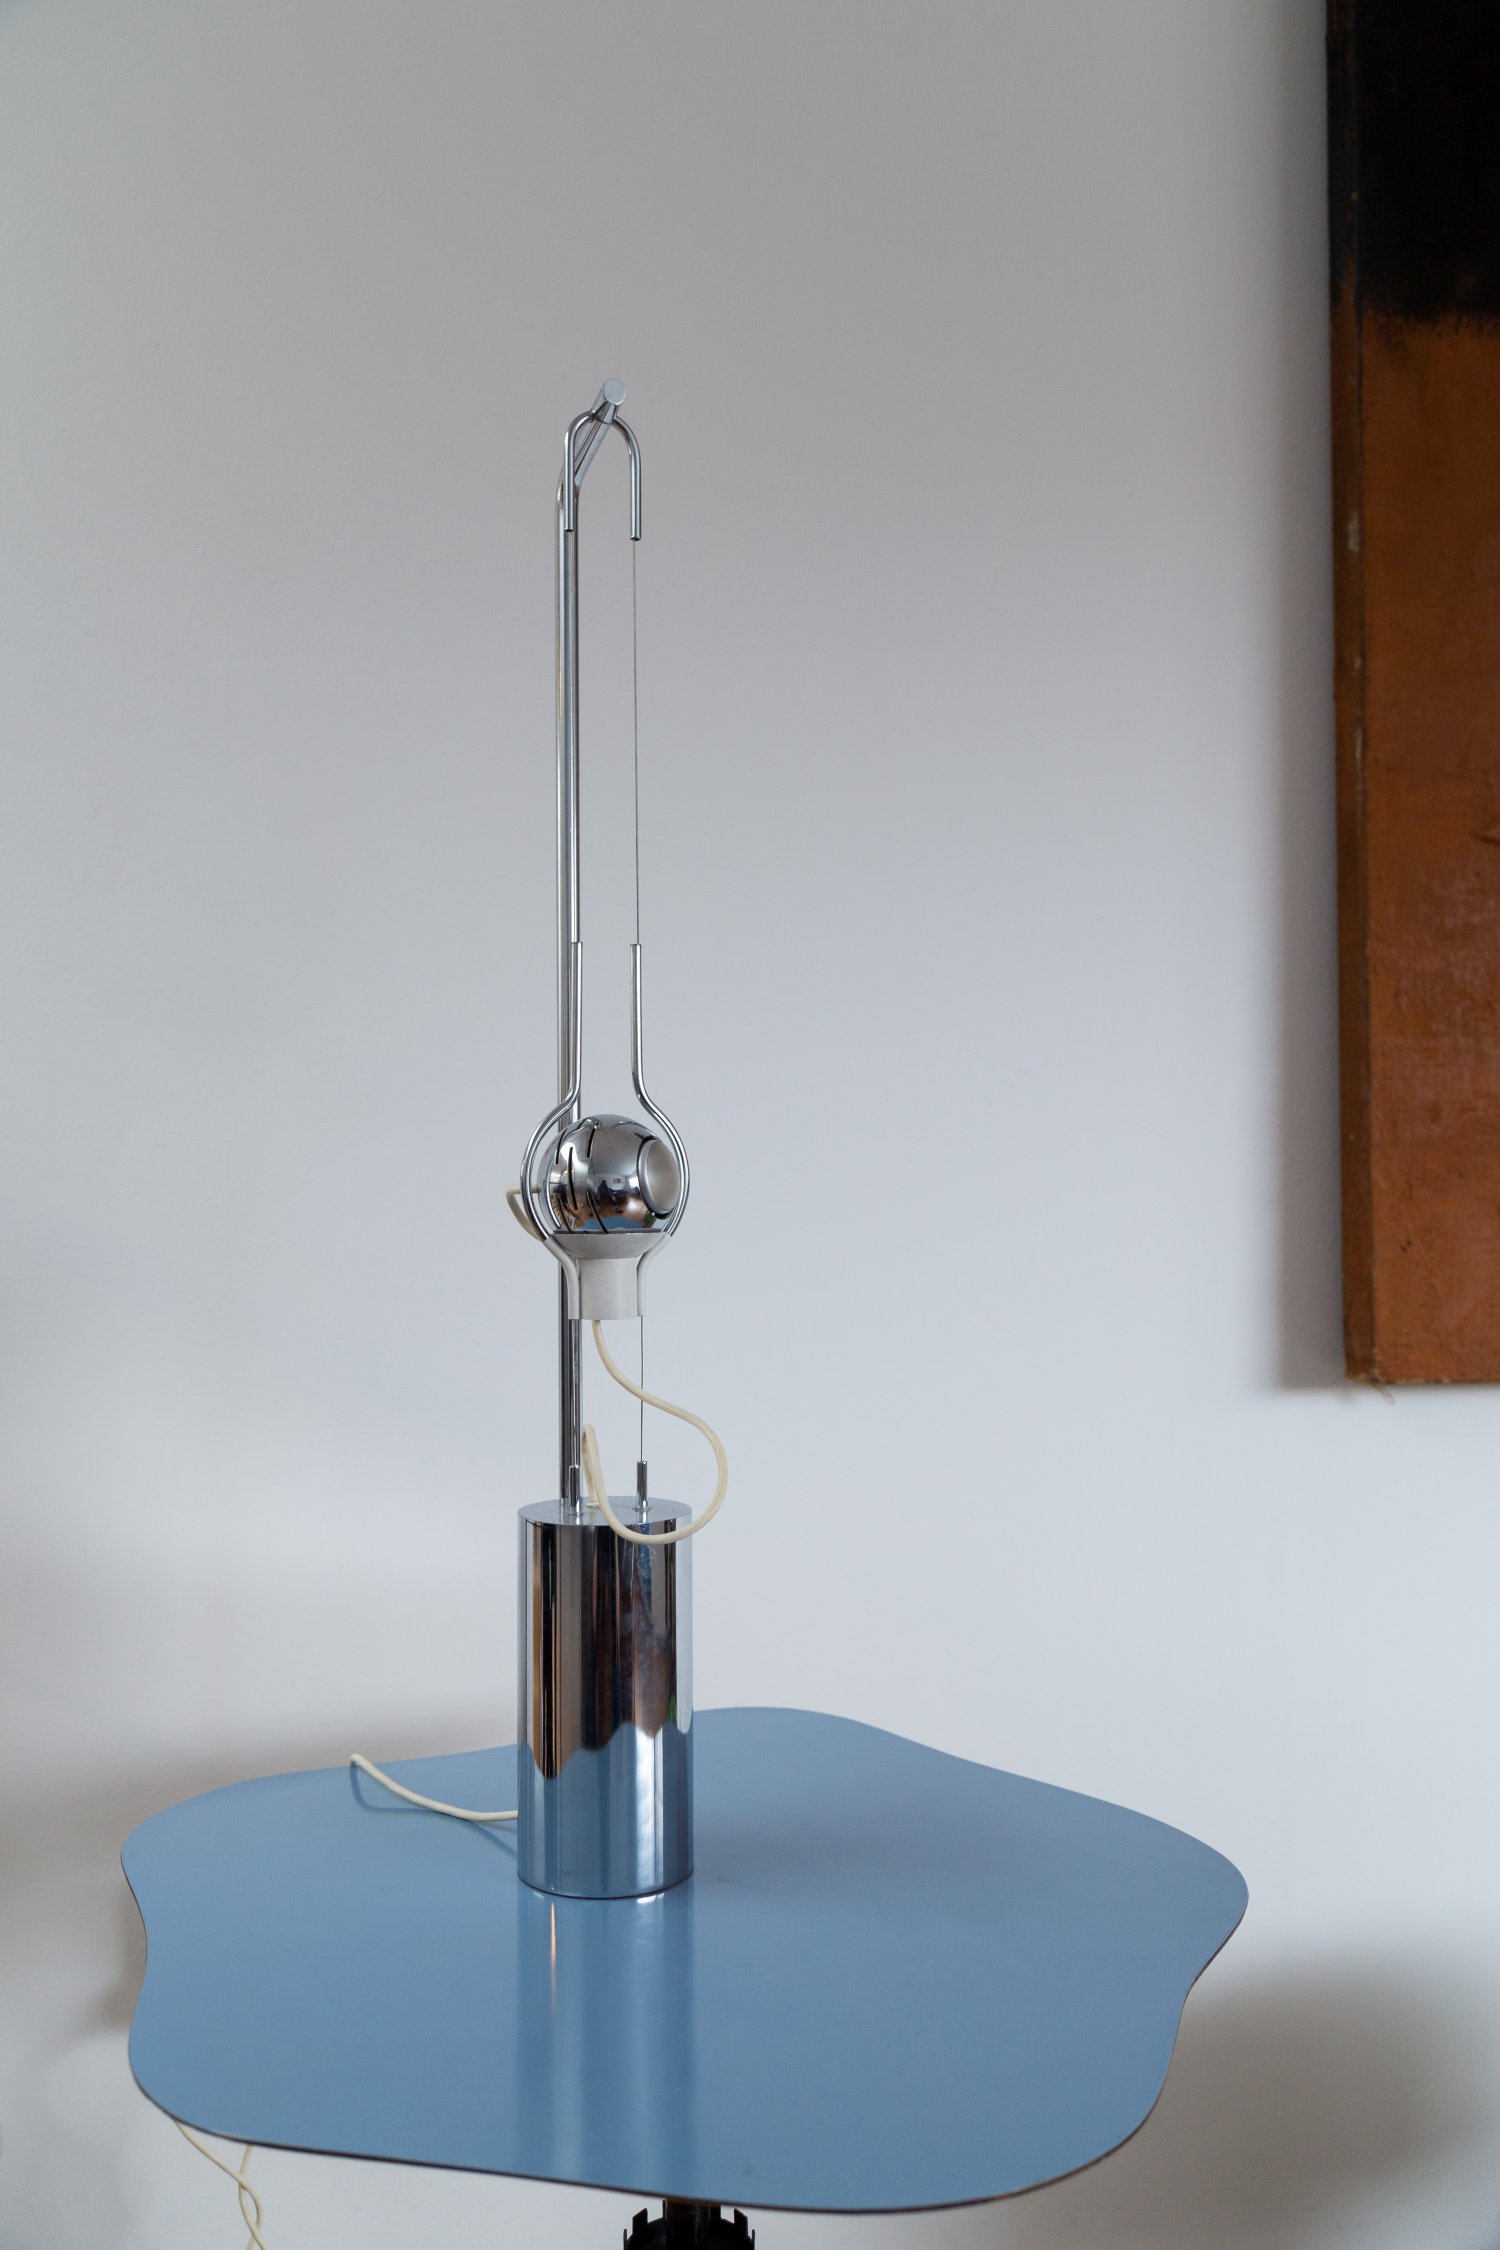 'Filo Sfera' lamp by Angelo Lelii for Arredoluce